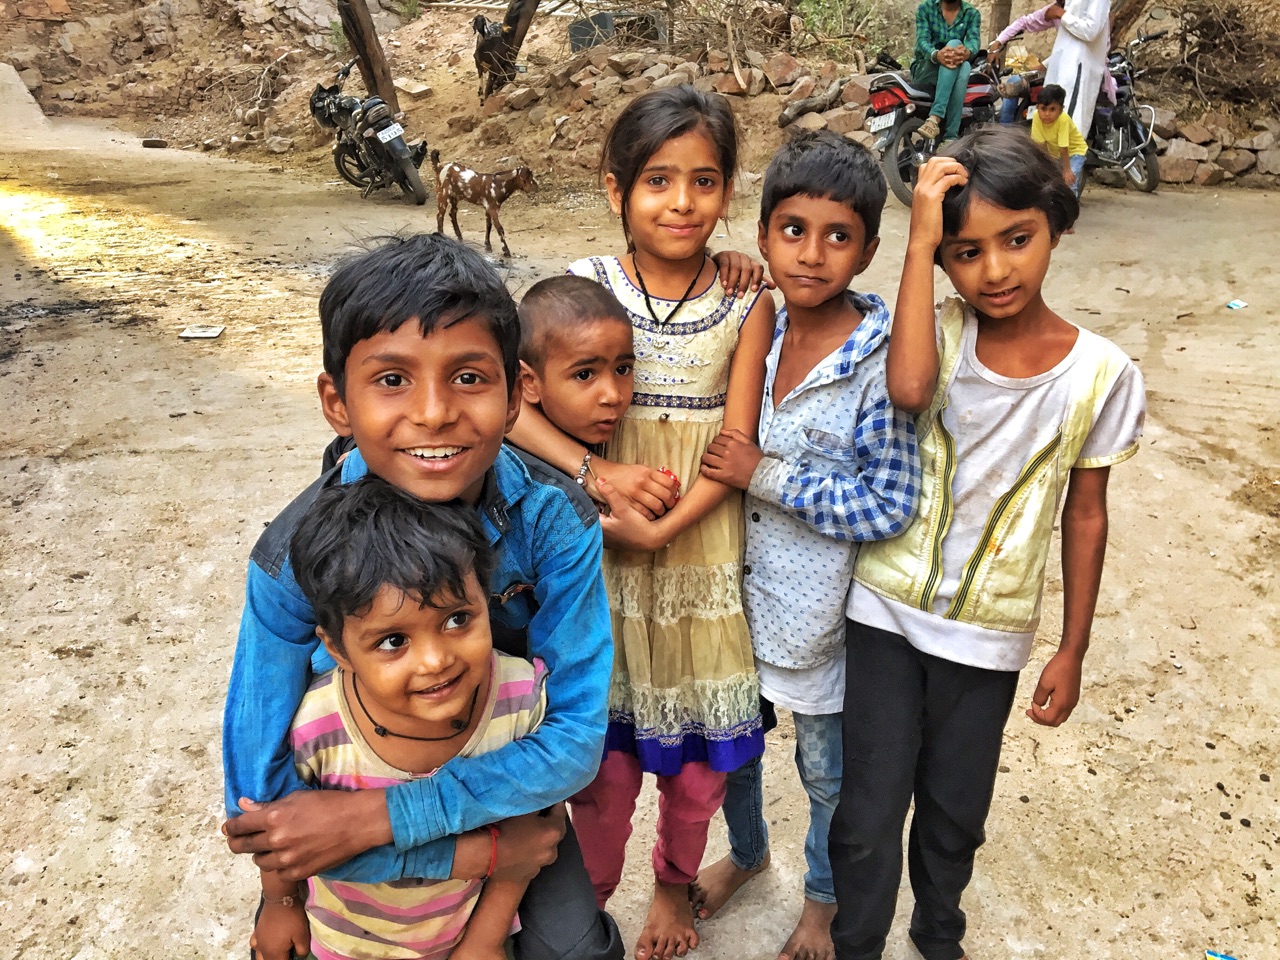 Enfants de Bundi en Inde, une des 6 villes d'Asie à visiter en 2018